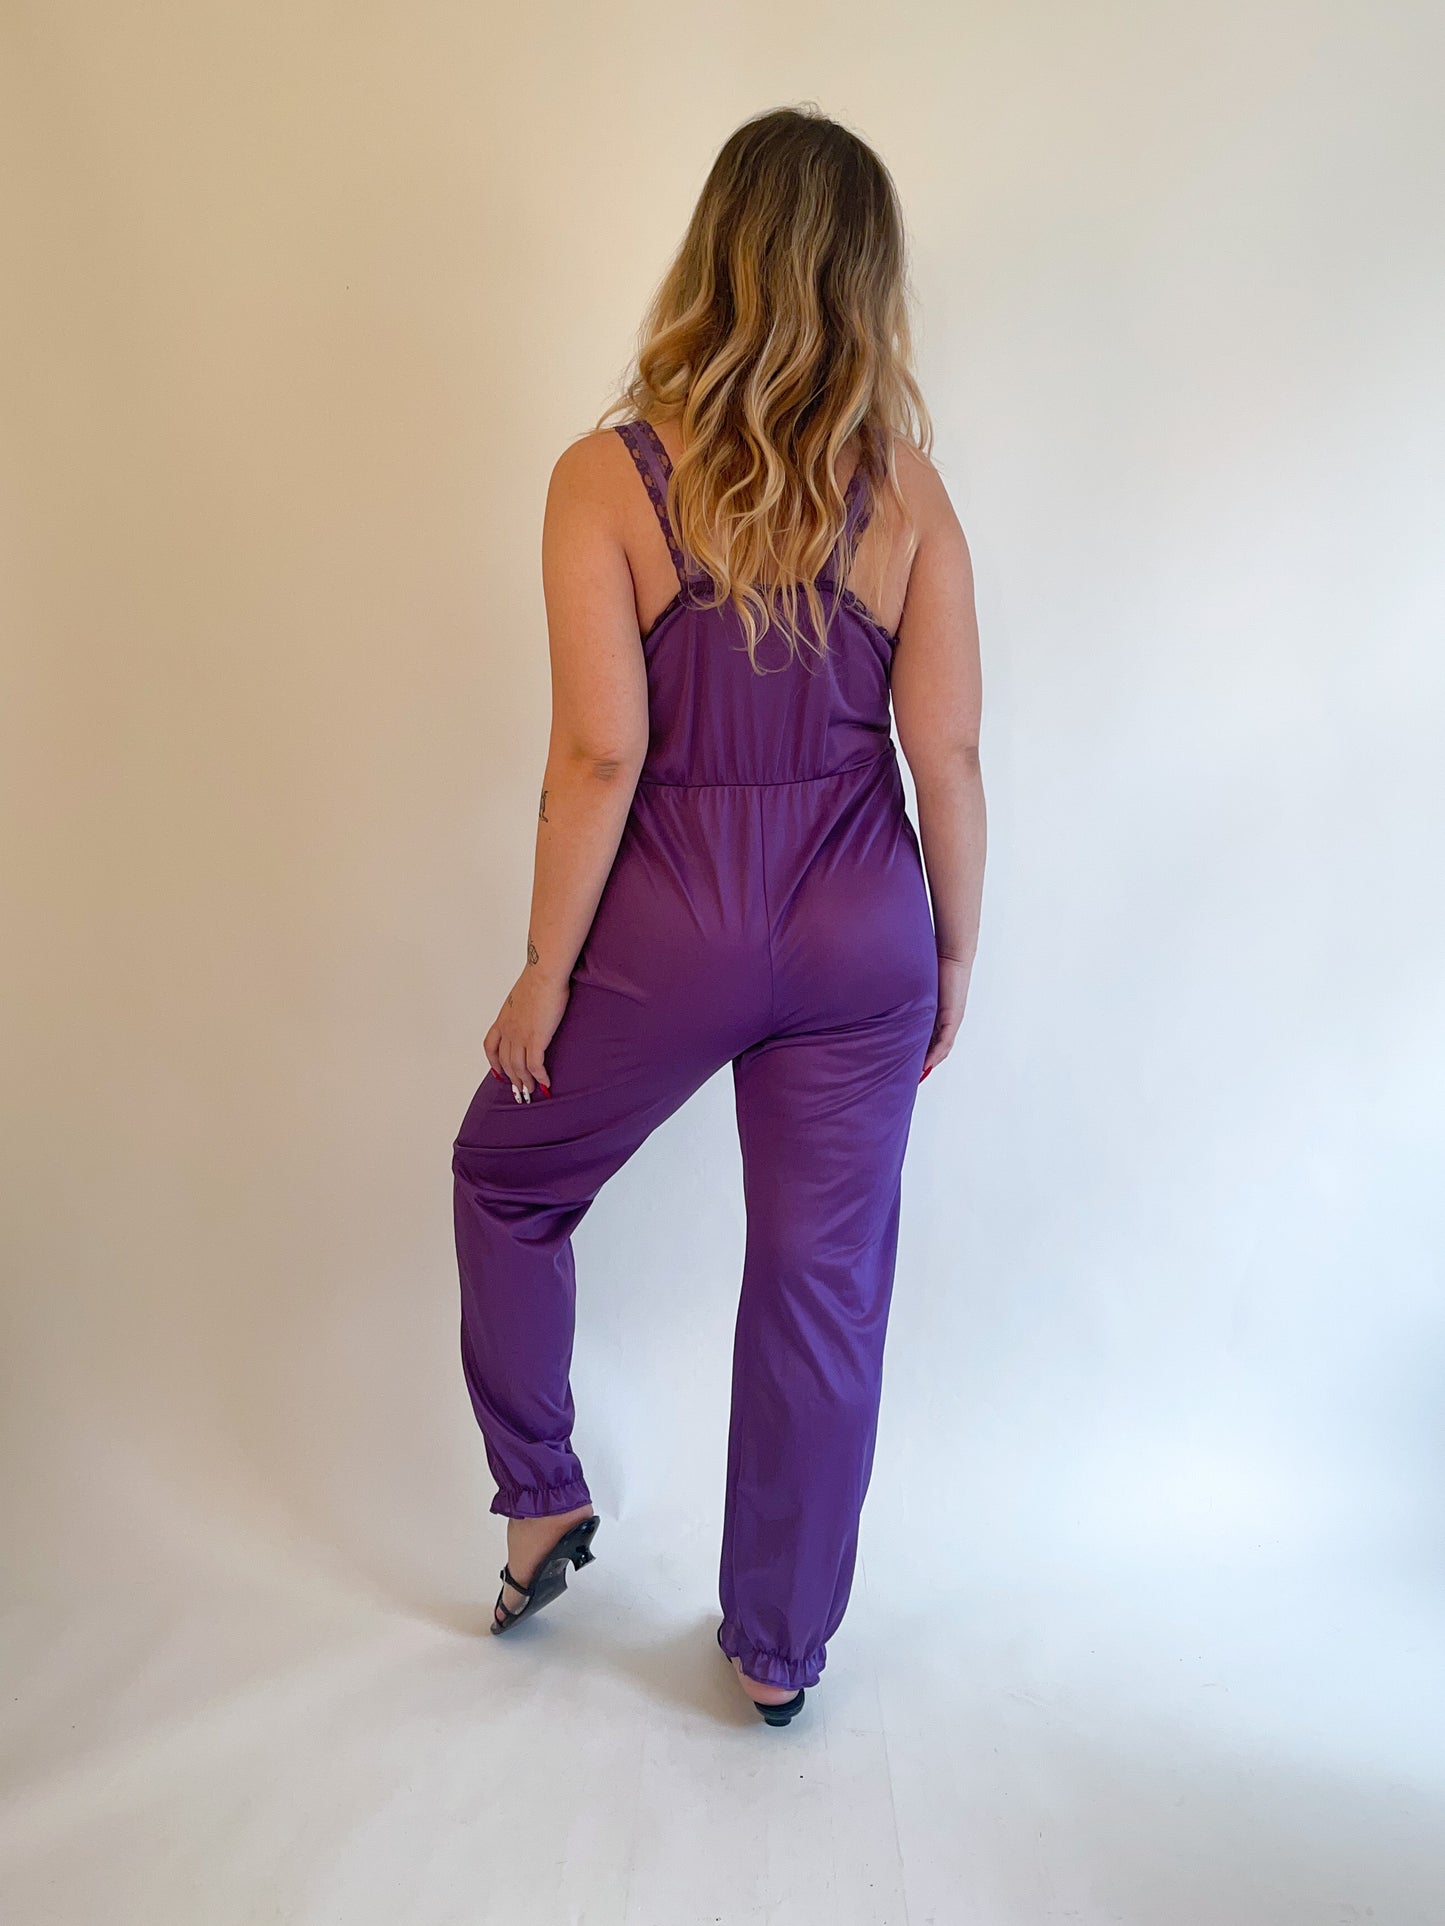 L 80s Purple Lace Lingerie Jumpsuit